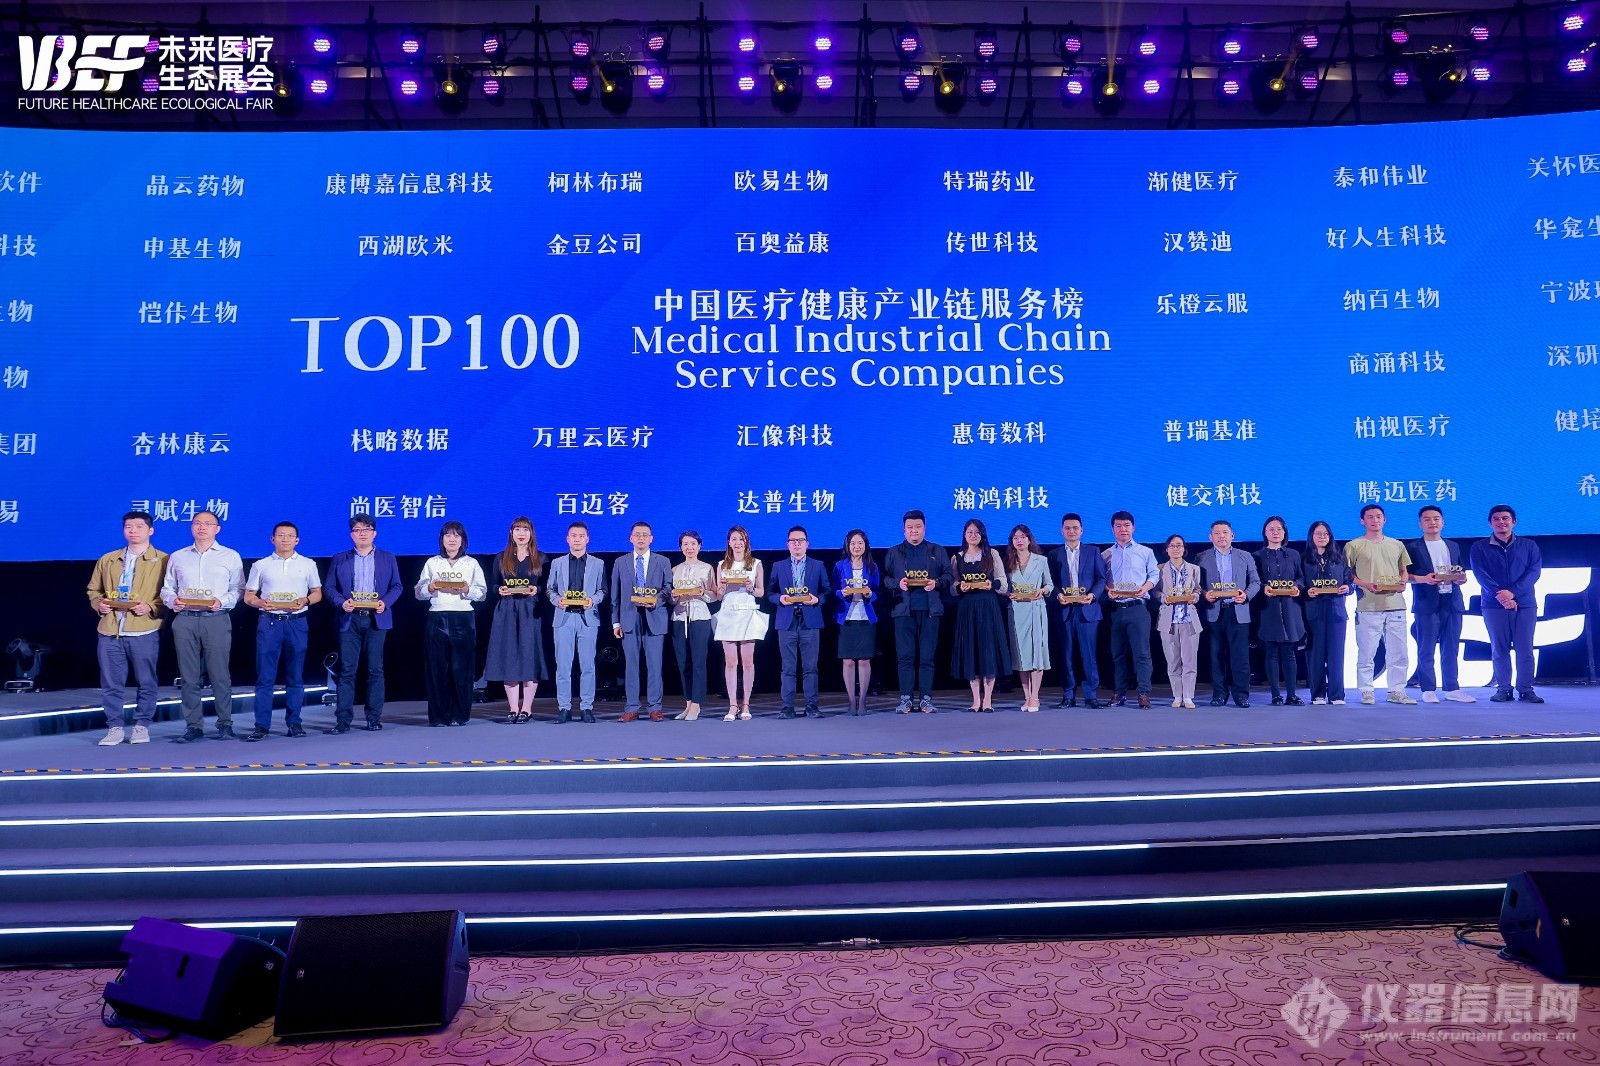 汉赞迪荣获2024未来医疗100强·中国医疗健康产业链服务榜TOP100